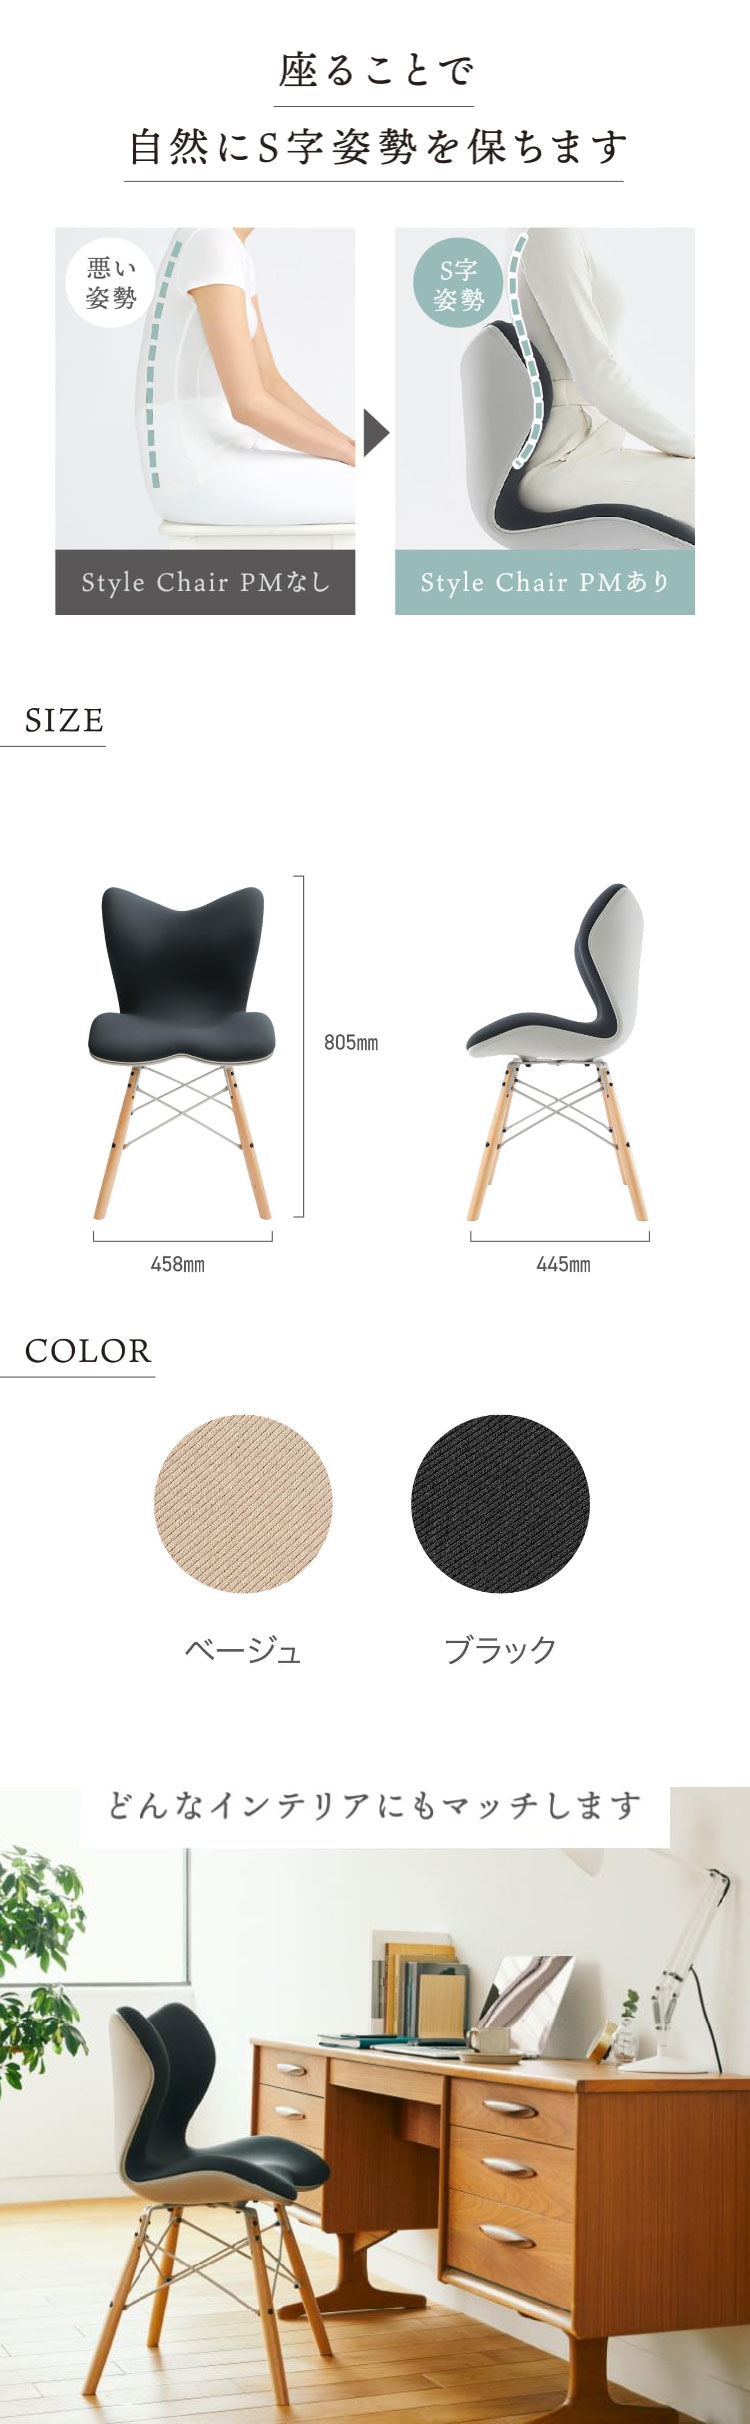 公式ストア】公式ストア Style Chair PM スタイル チェア ピーエム MTG